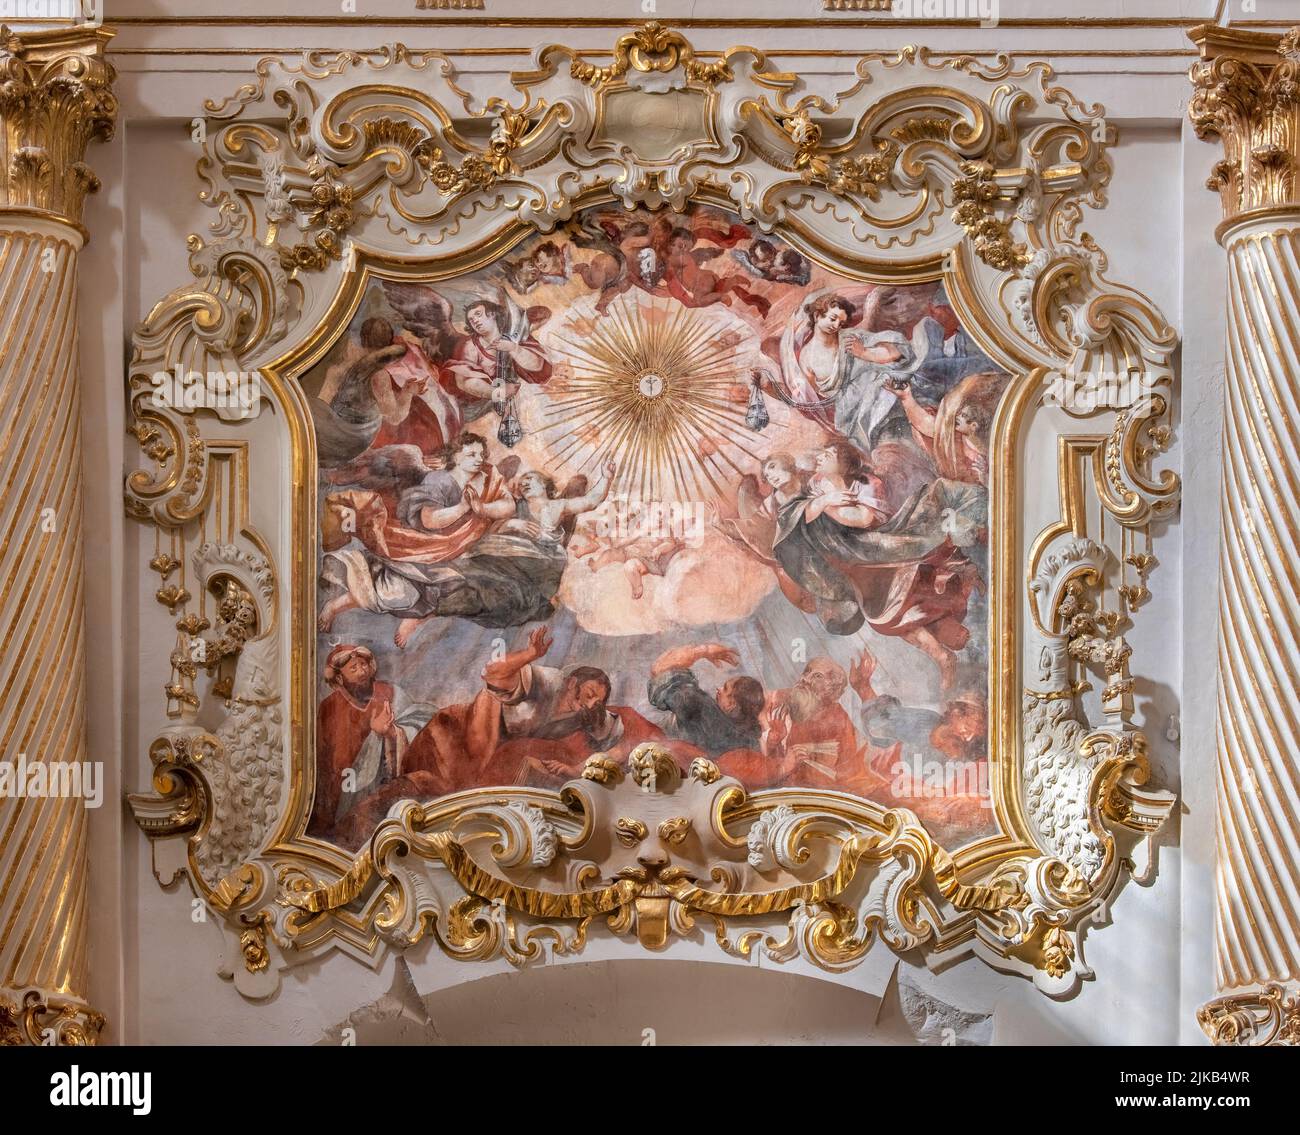 VALENCIA, SPANIEN - 17. FEBRUAR 2022: Das barocke Fresko und der Stuckruhm der Eucharistie in der Kirche Iglesia de San Marín von José Vergara Gimeno Stockfoto